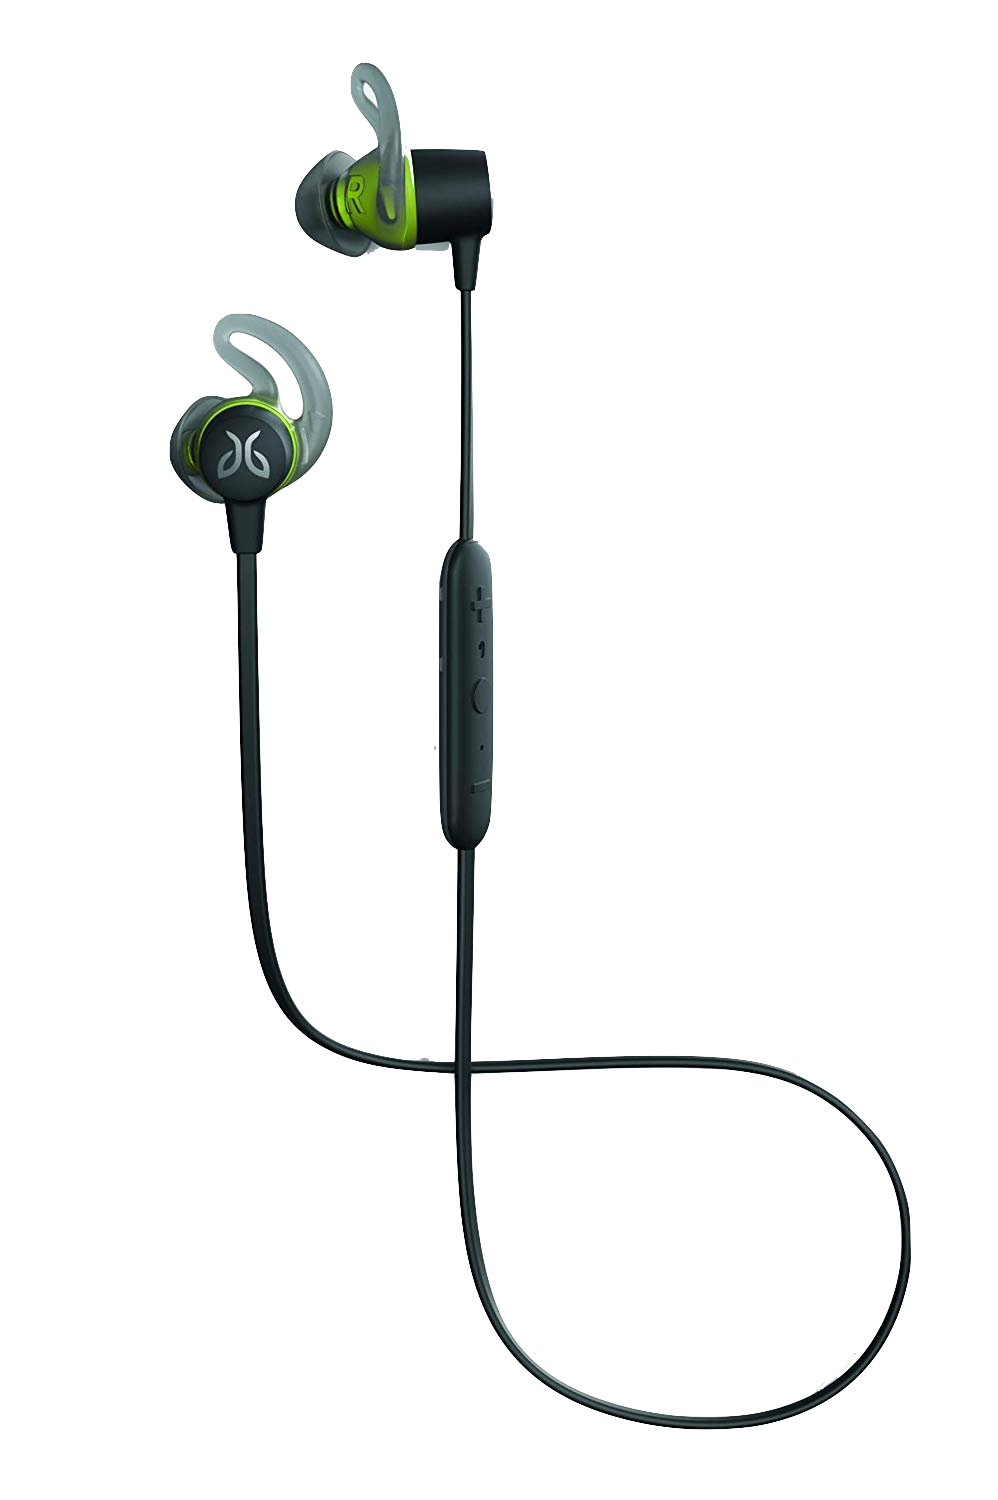 headphones for fitbit versa